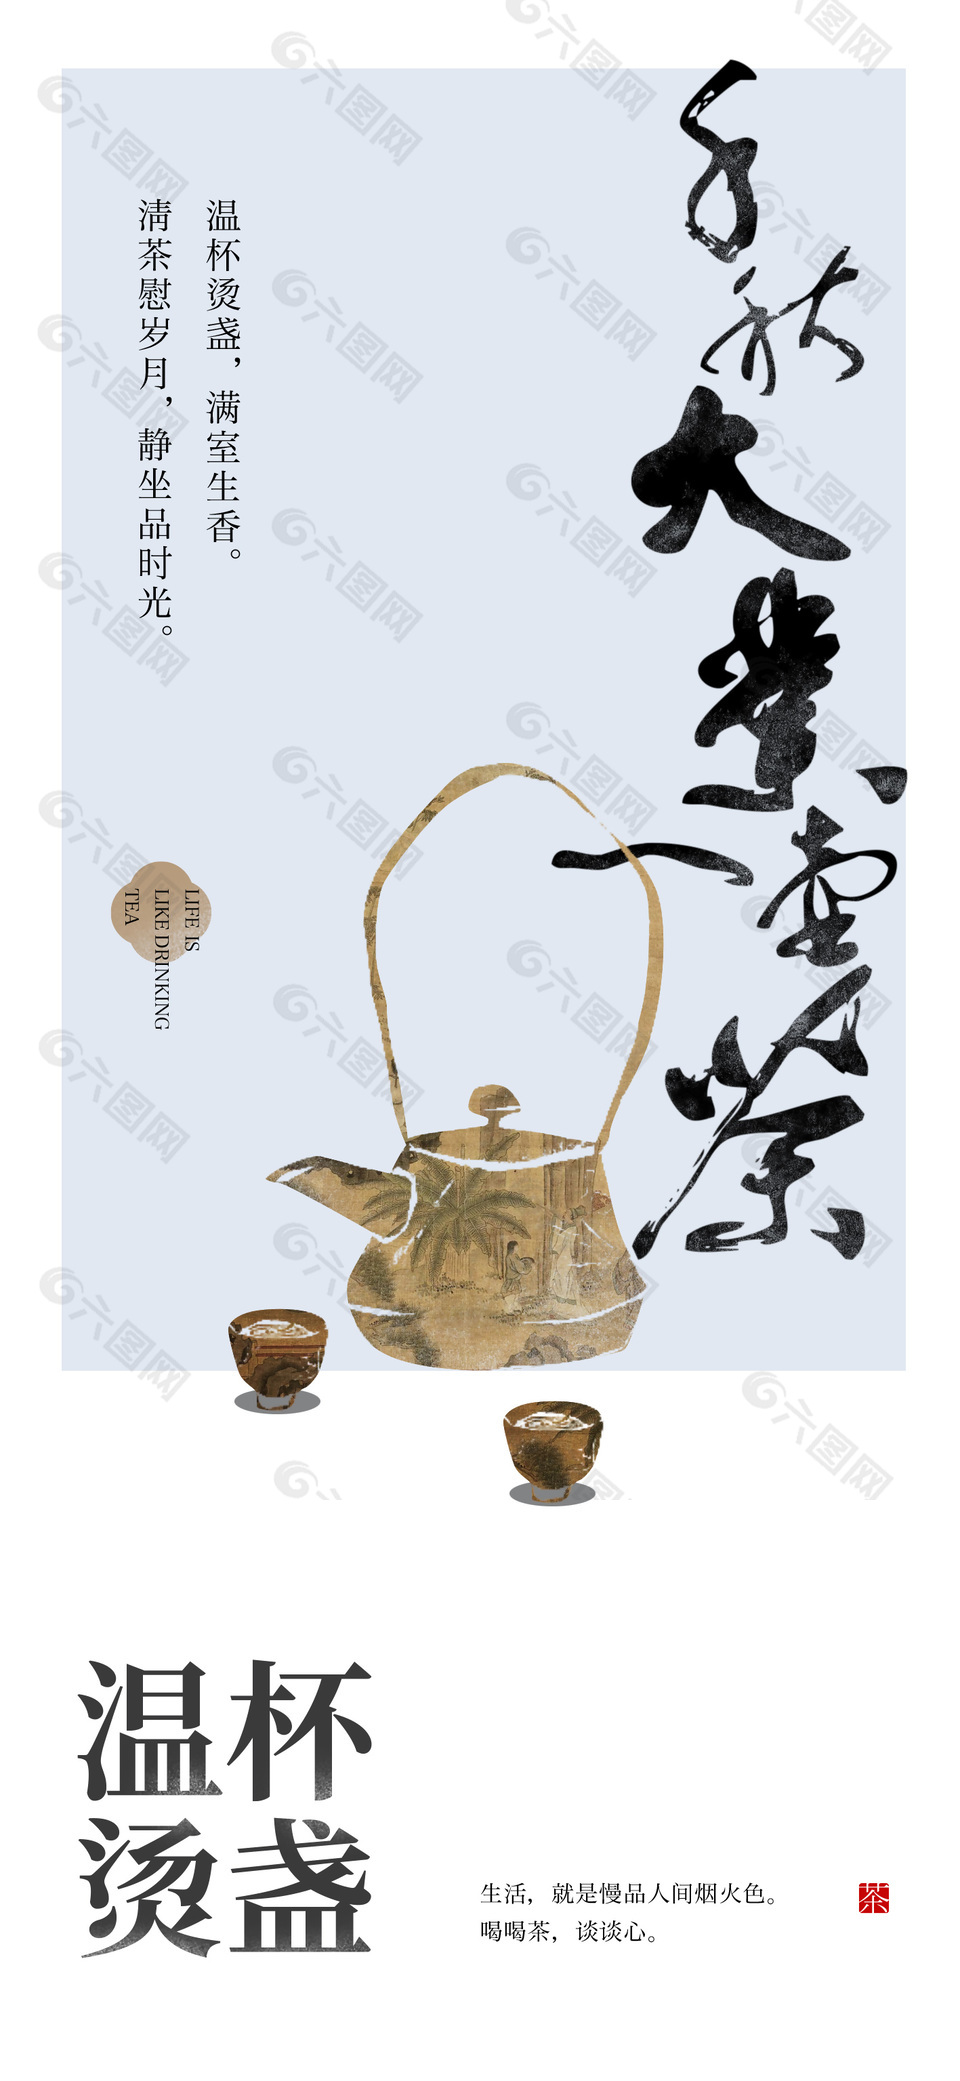 温杯烫盏禅意茶文化宣传海报